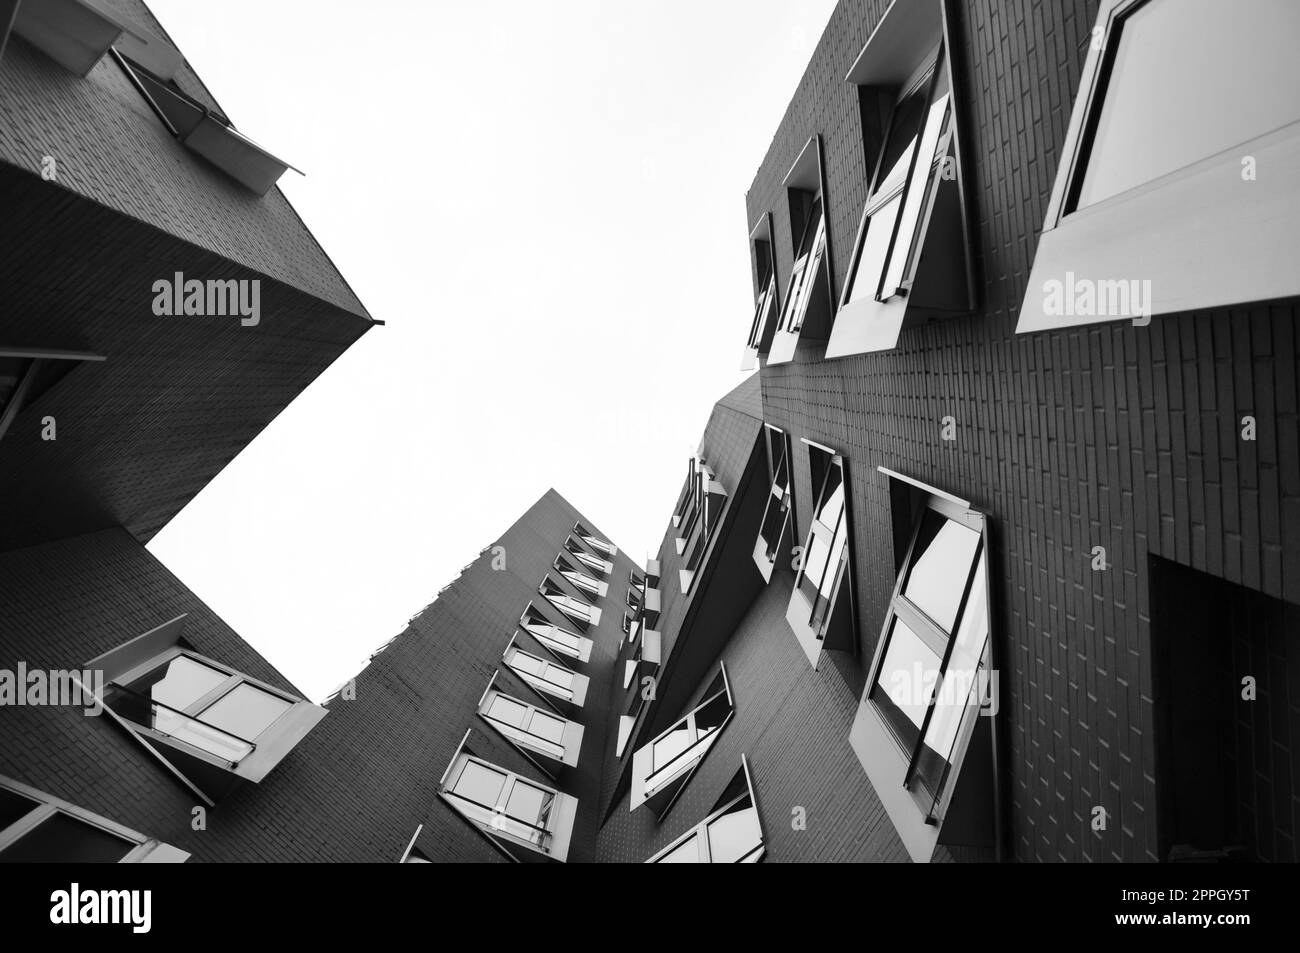 Prise de vue en bas angle à niveaux de gris des bâtiments Gehry au Media Harbour à Düsseldorf, en Allemagne Banque D'Images